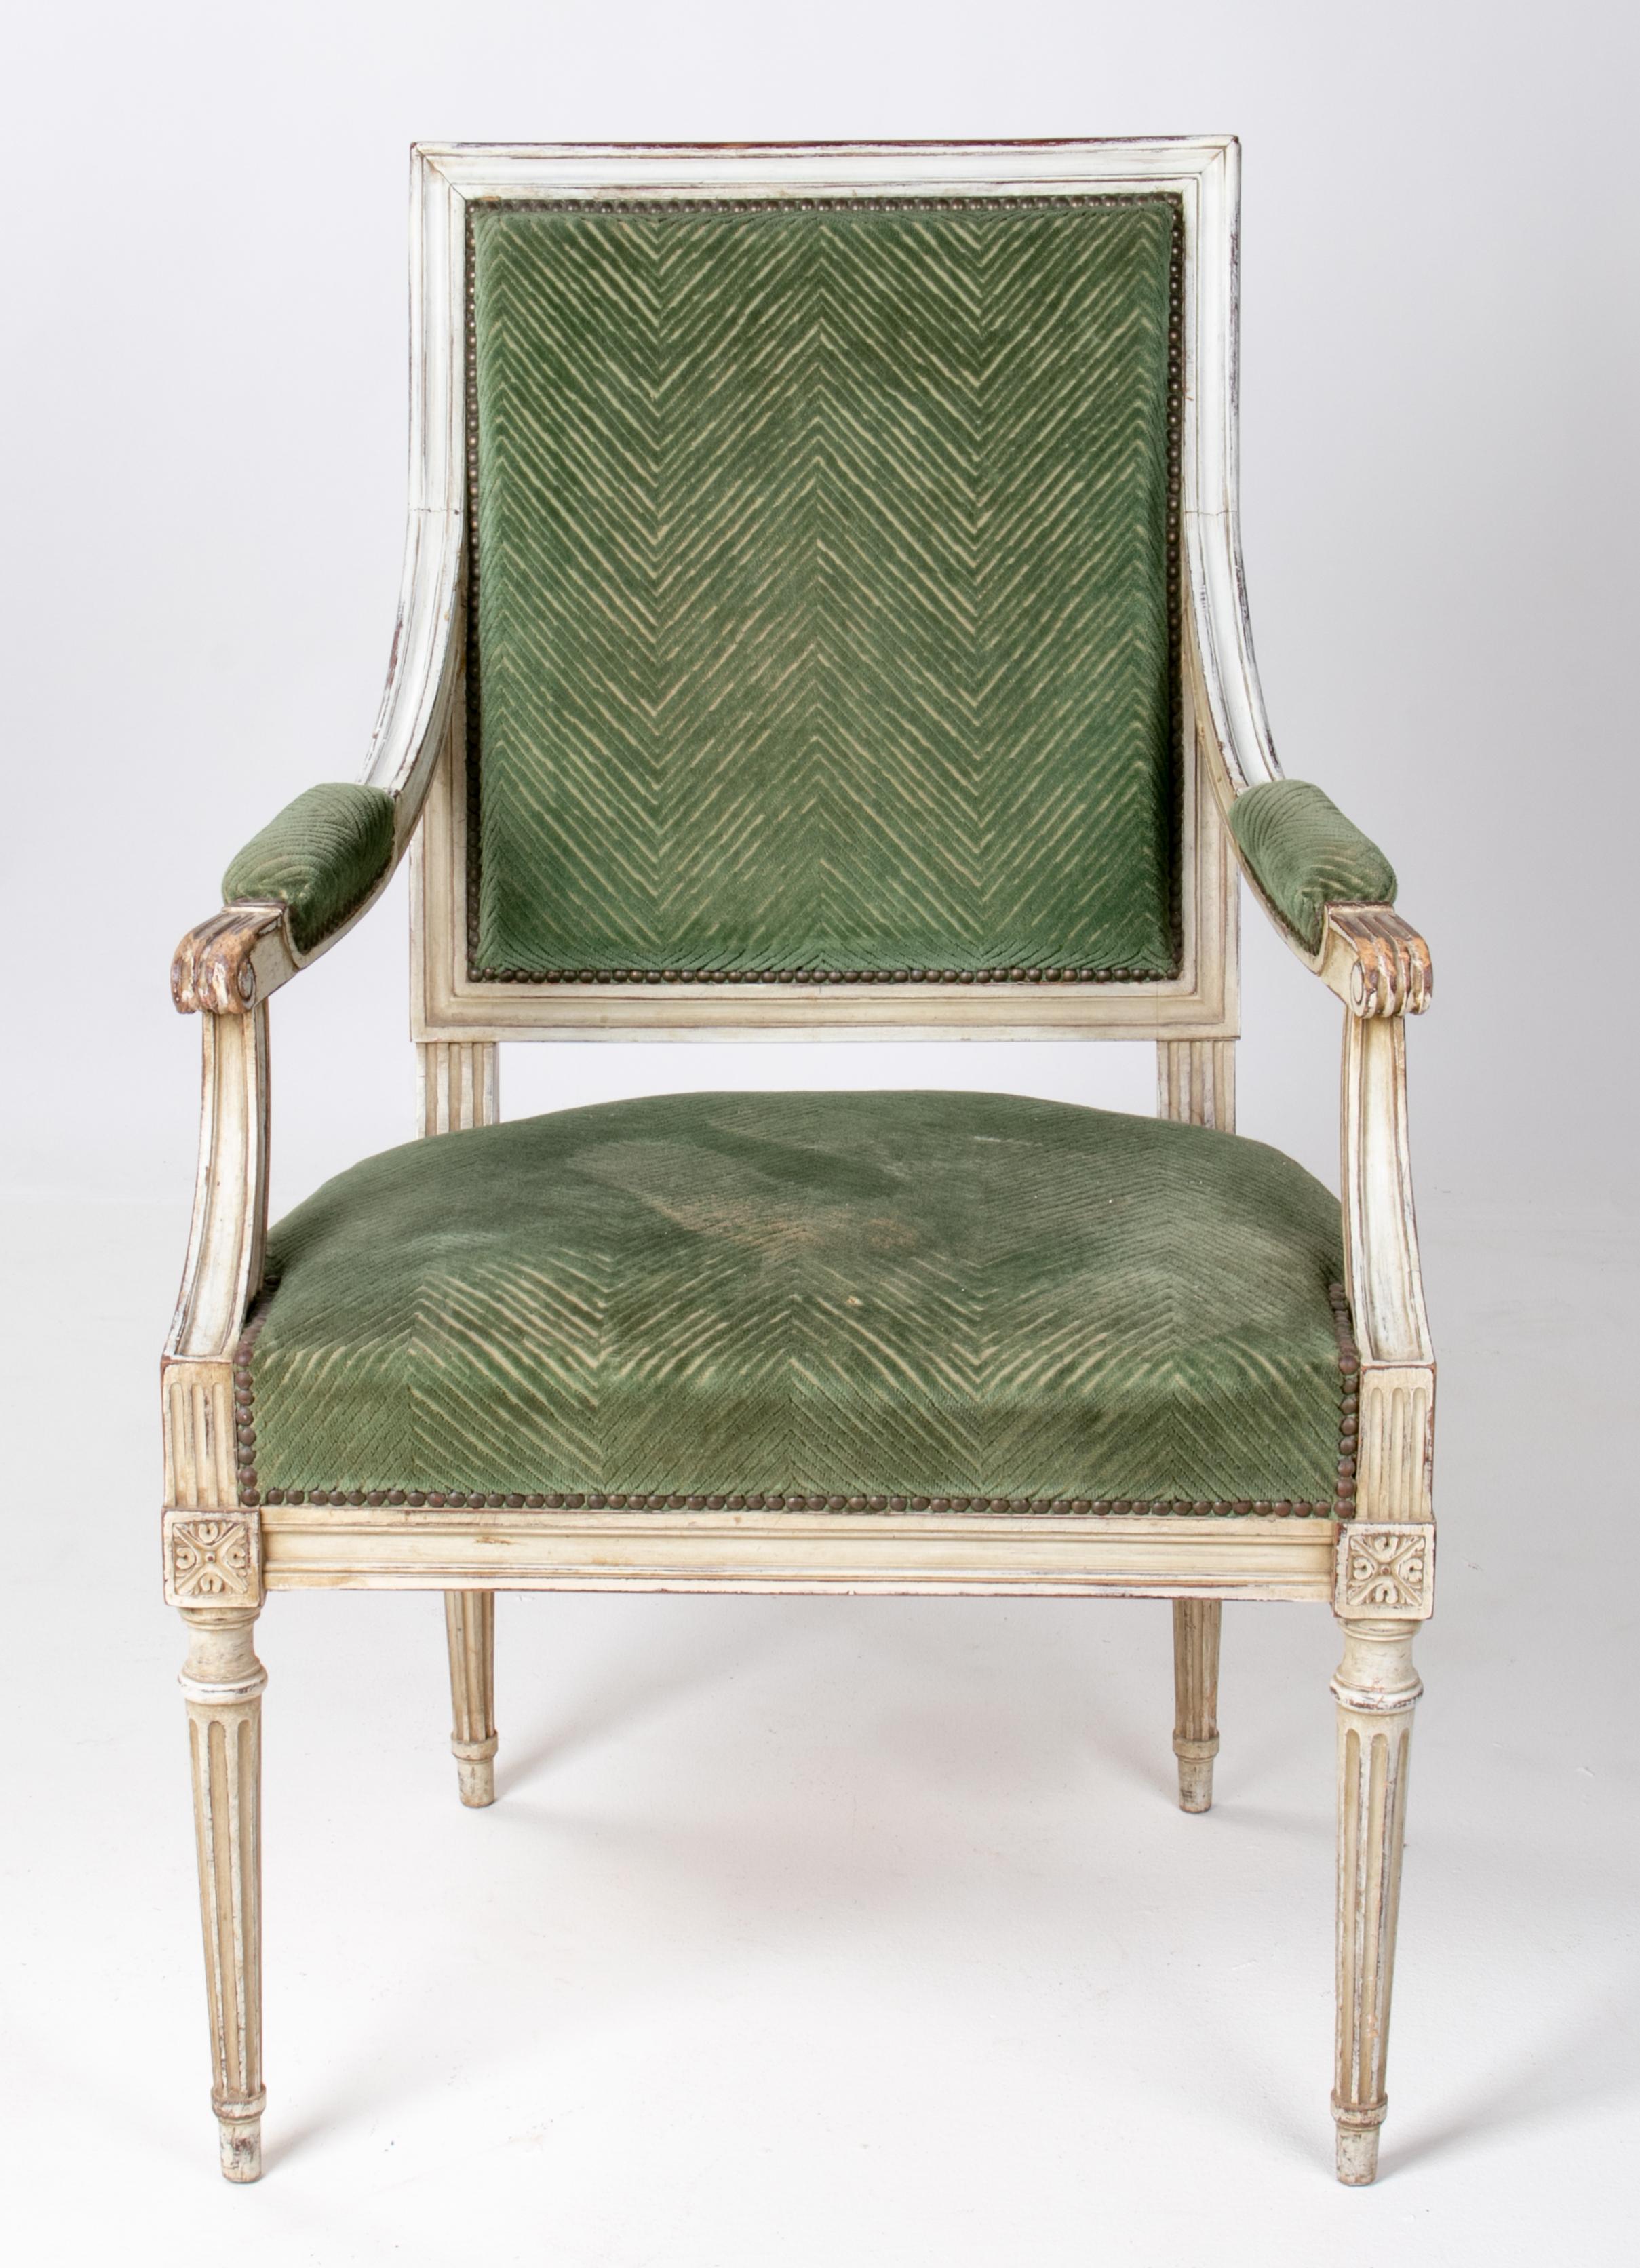 Französischer Sessel im Louis-XVI-Stil aus den 1870er Jahren, weiß lackiert und mit Samt gepolstert.
            